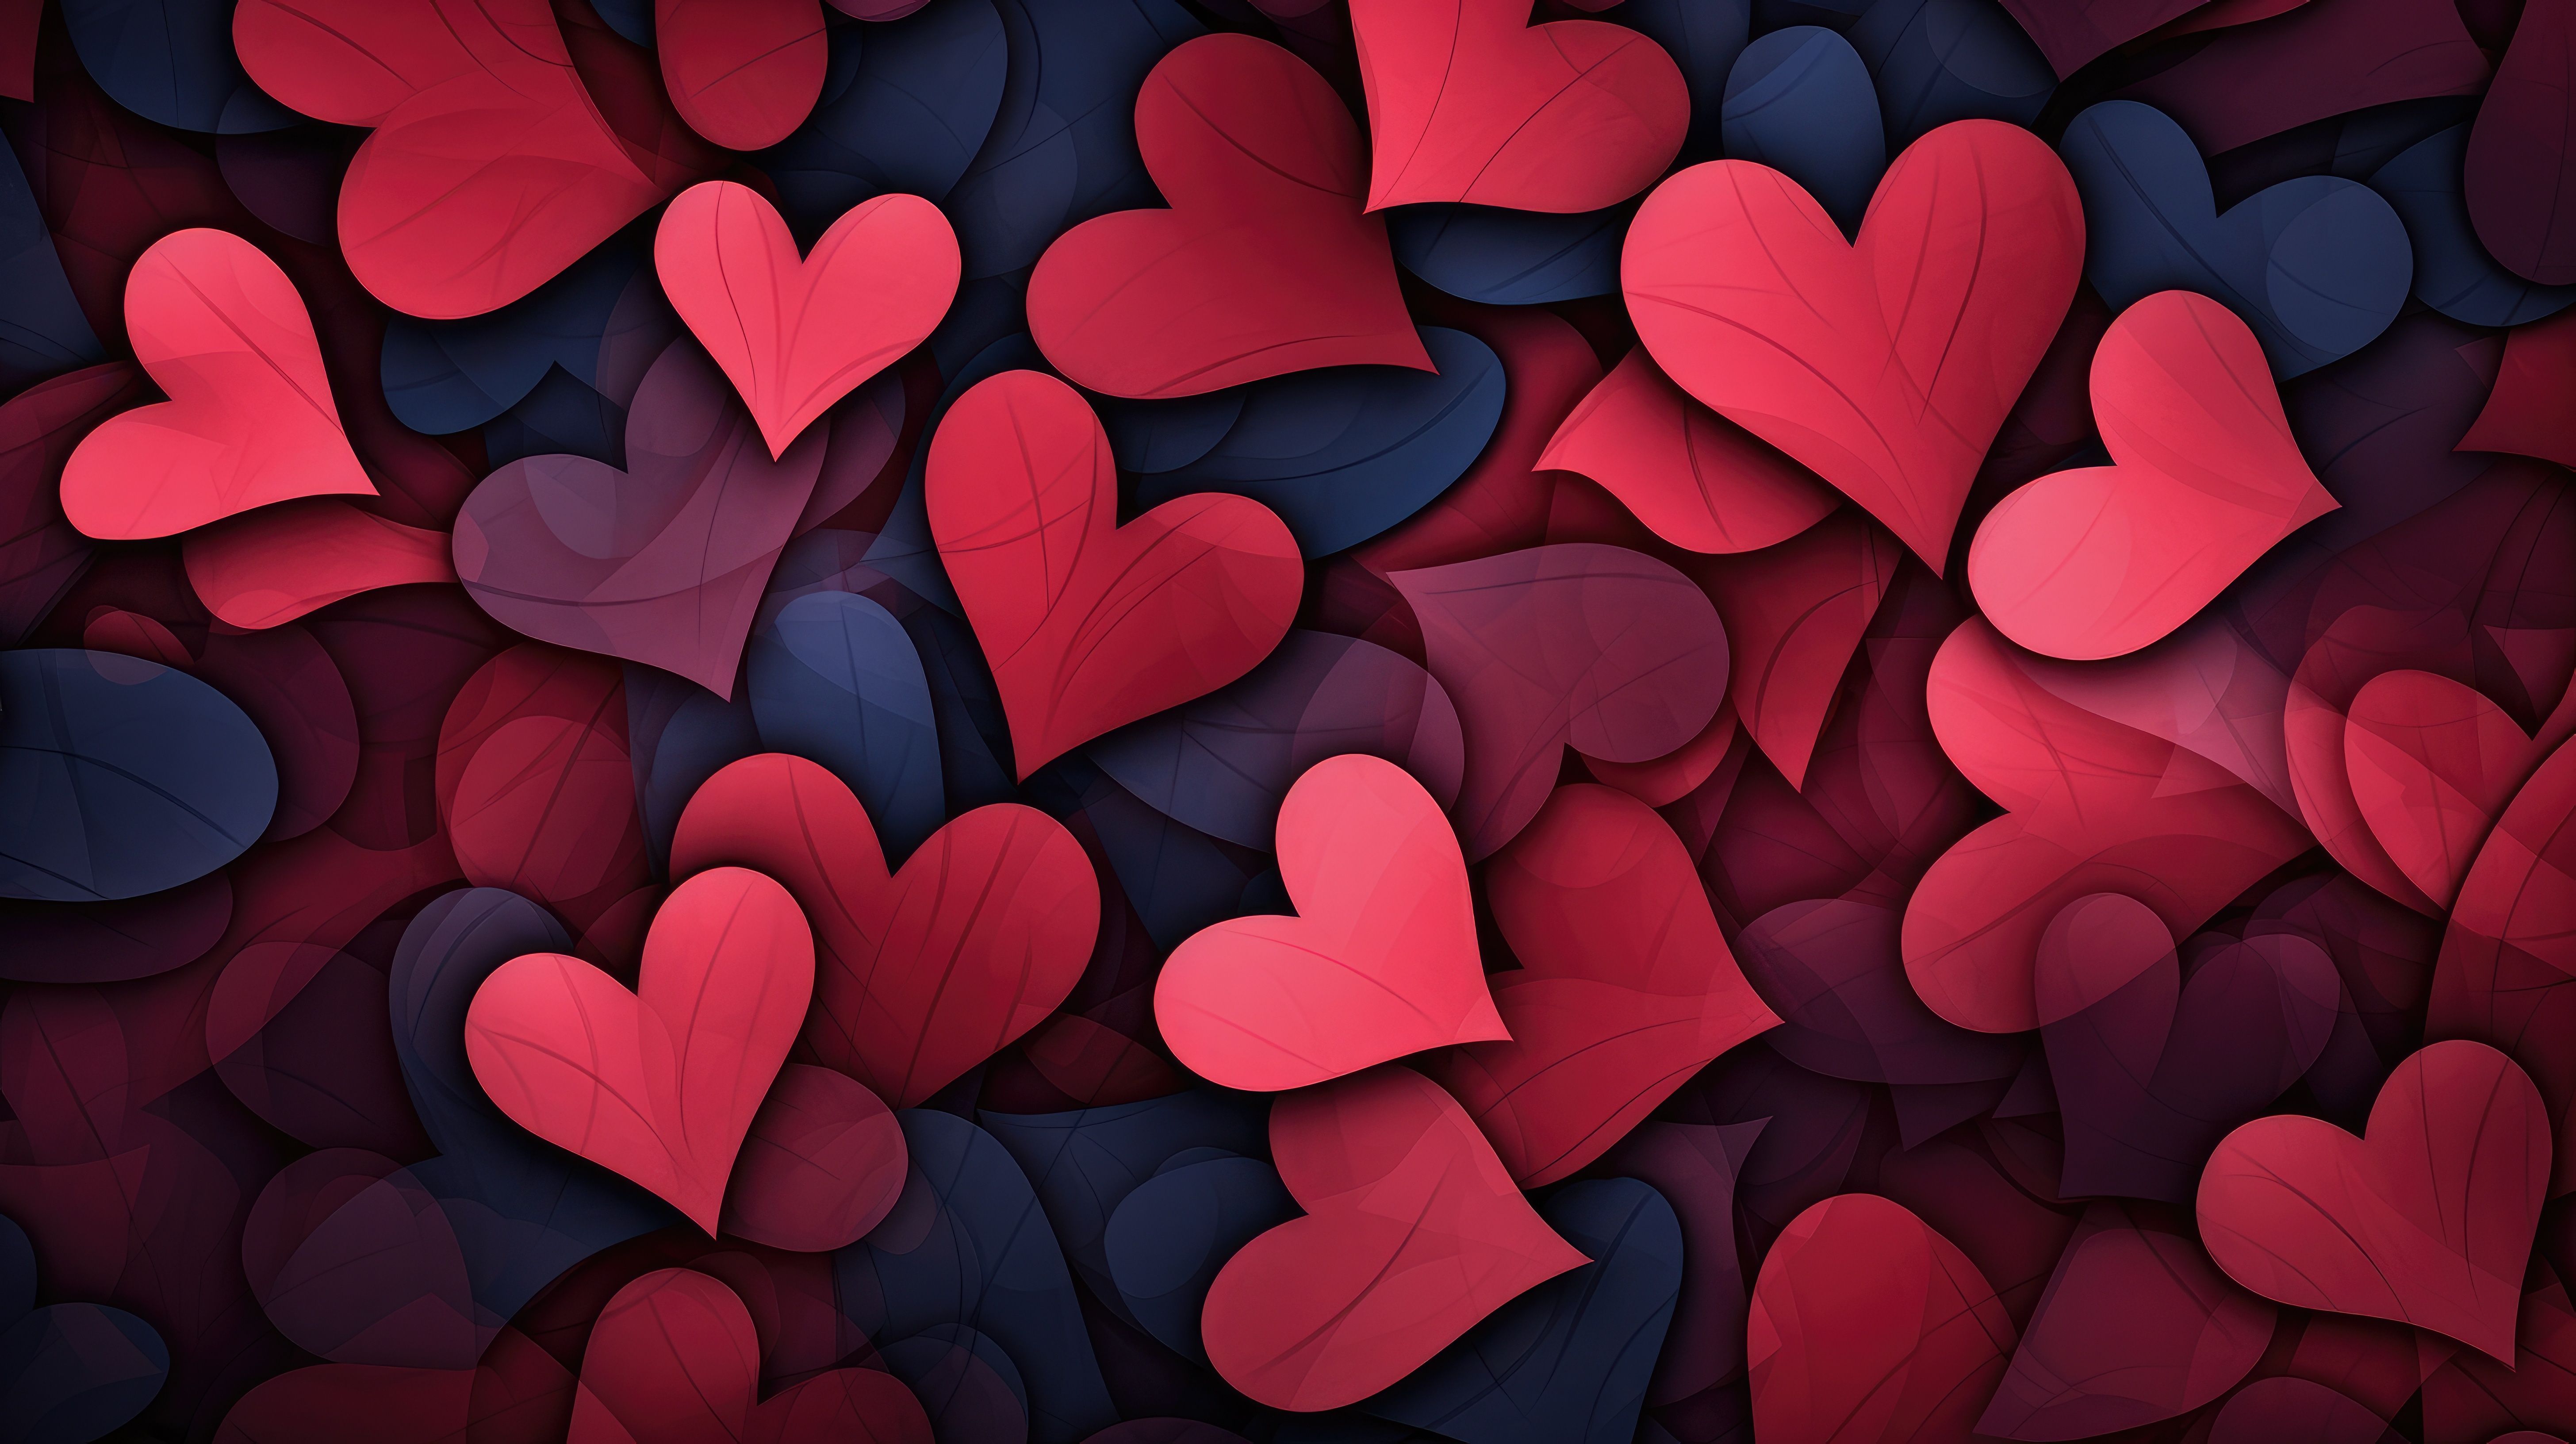 180 Love Hearts ideas  heart wallpaper, love wallpaper, love heart